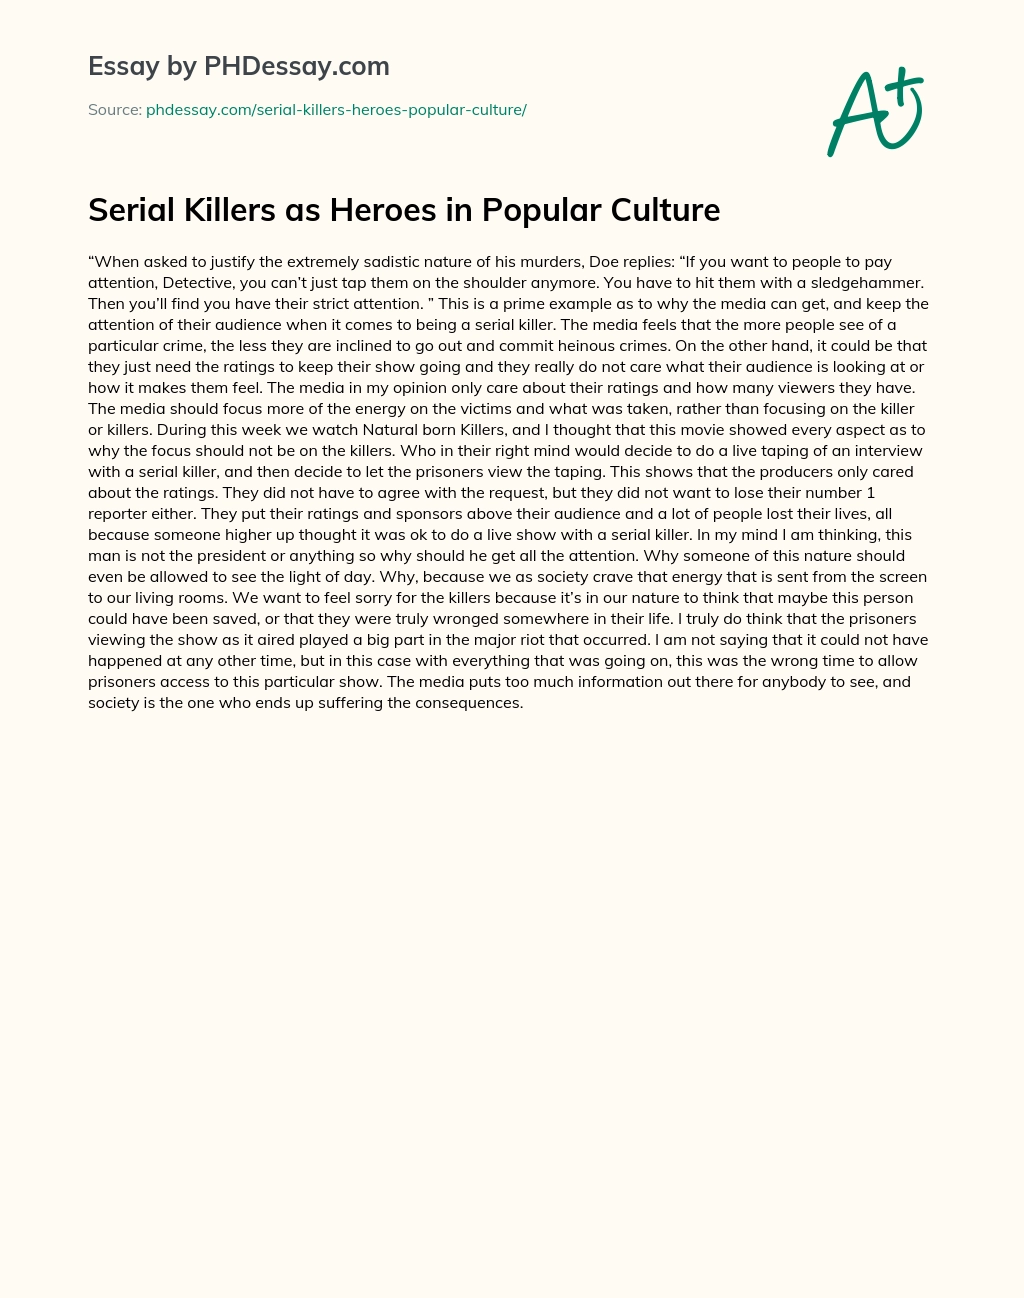 Serial Killers as Heroes in Popular Culture essay